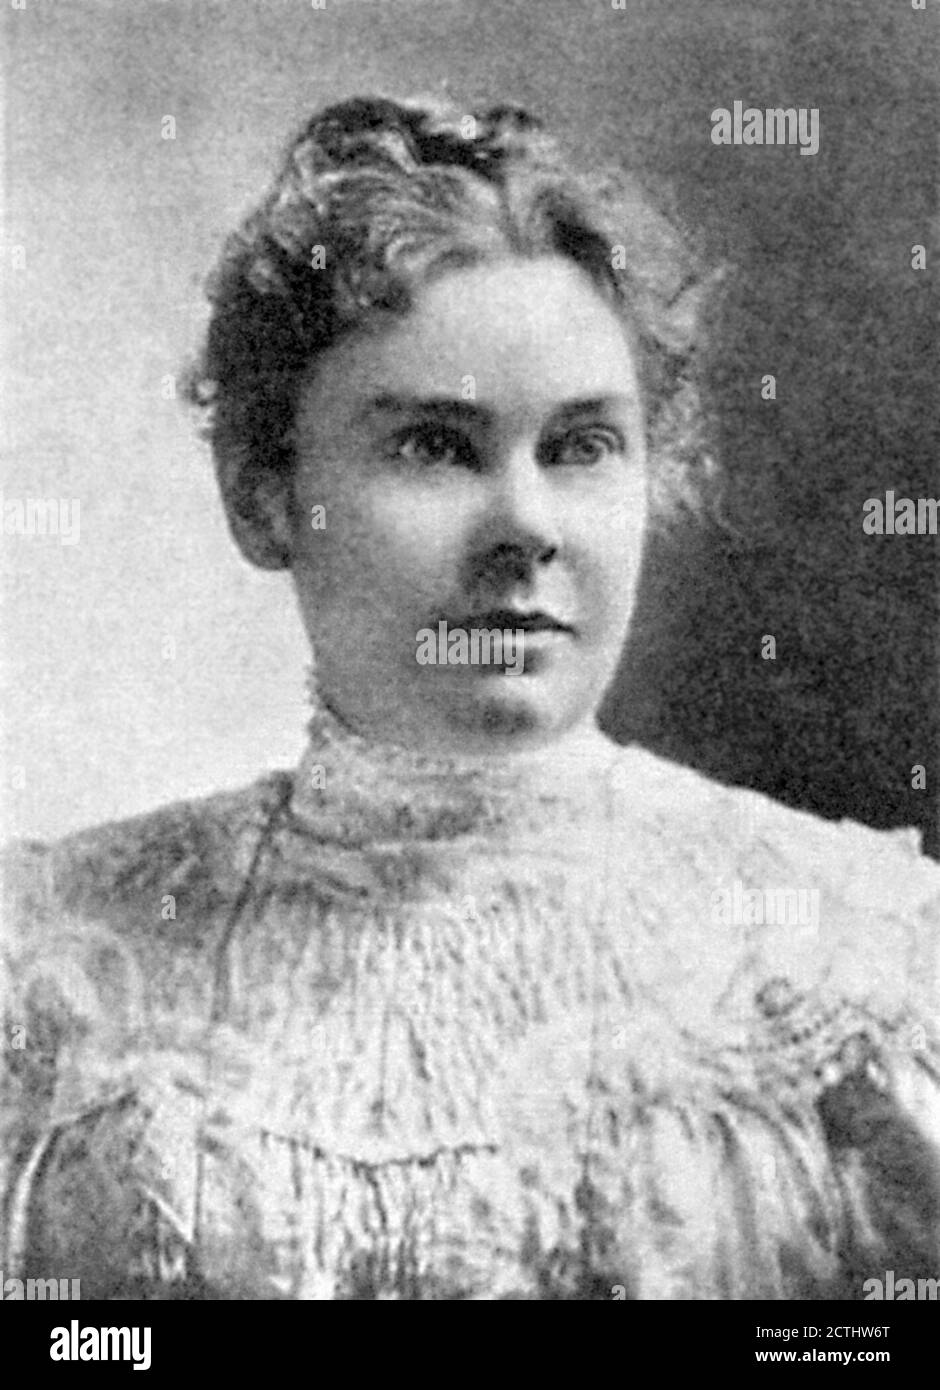 Lizzie Borden. Porträt von Lizzie Andrew Borden (1860-1927) im Jahr 1889. Borden wurde wegen des Axtmordes an Vater und Stiefmutter angeklagt und freigesprochen. Stockfoto